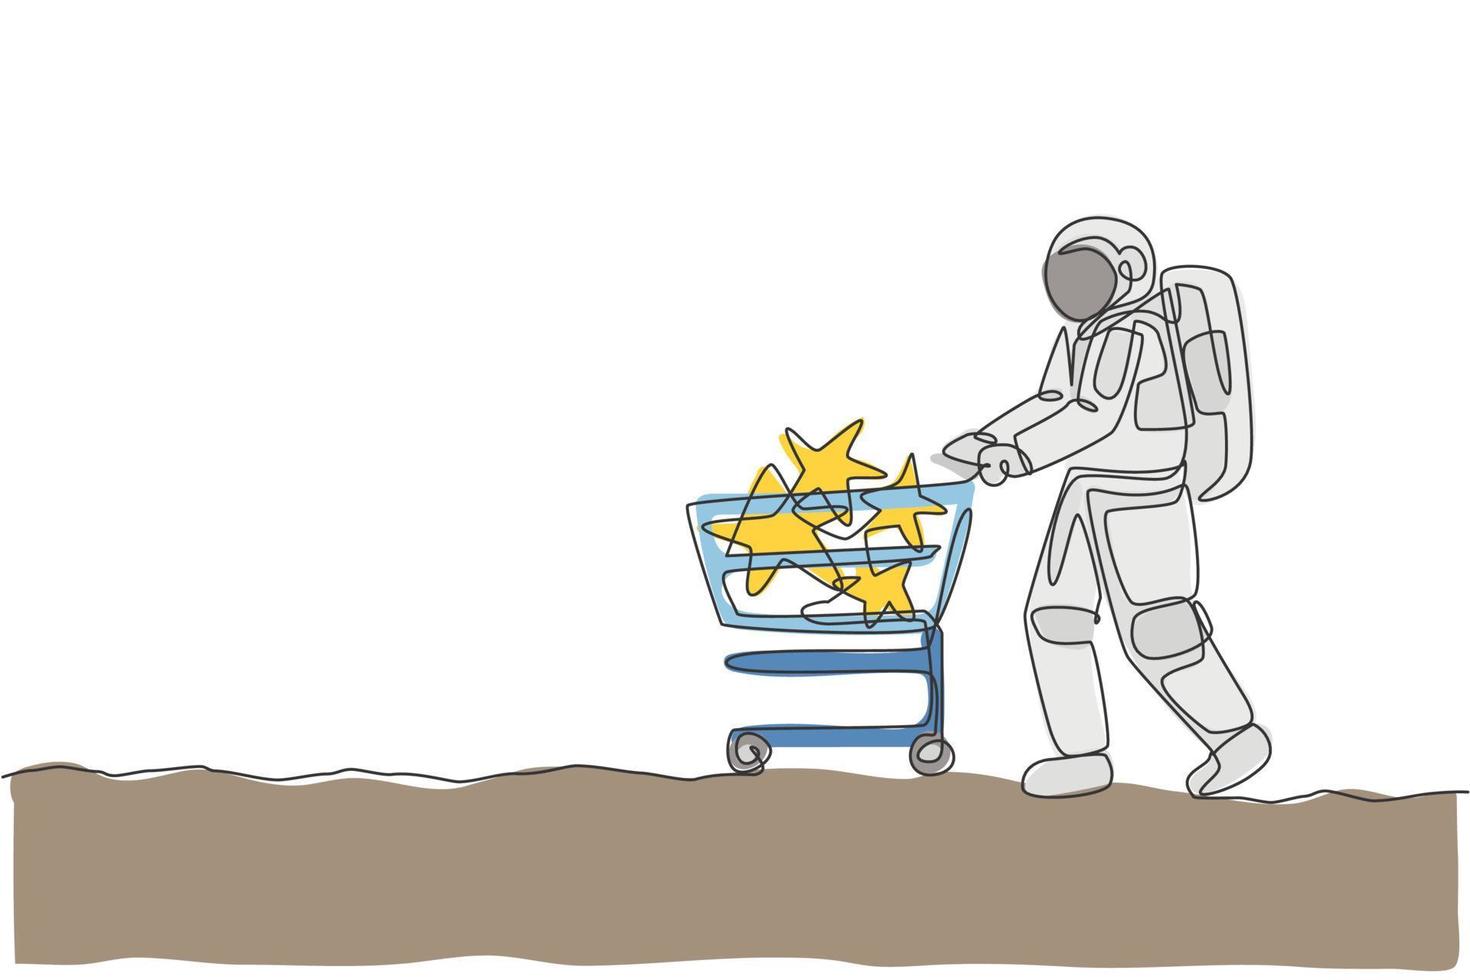 un disegno a tratteggio continuo di un giovane astronauta che spinge il carrello con le stelle all'interno e che compra un giocattolo al supermercato. concetto di spazio galassia cosmica. illustrazione grafica vettoriale di disegno dinamico a linea singola